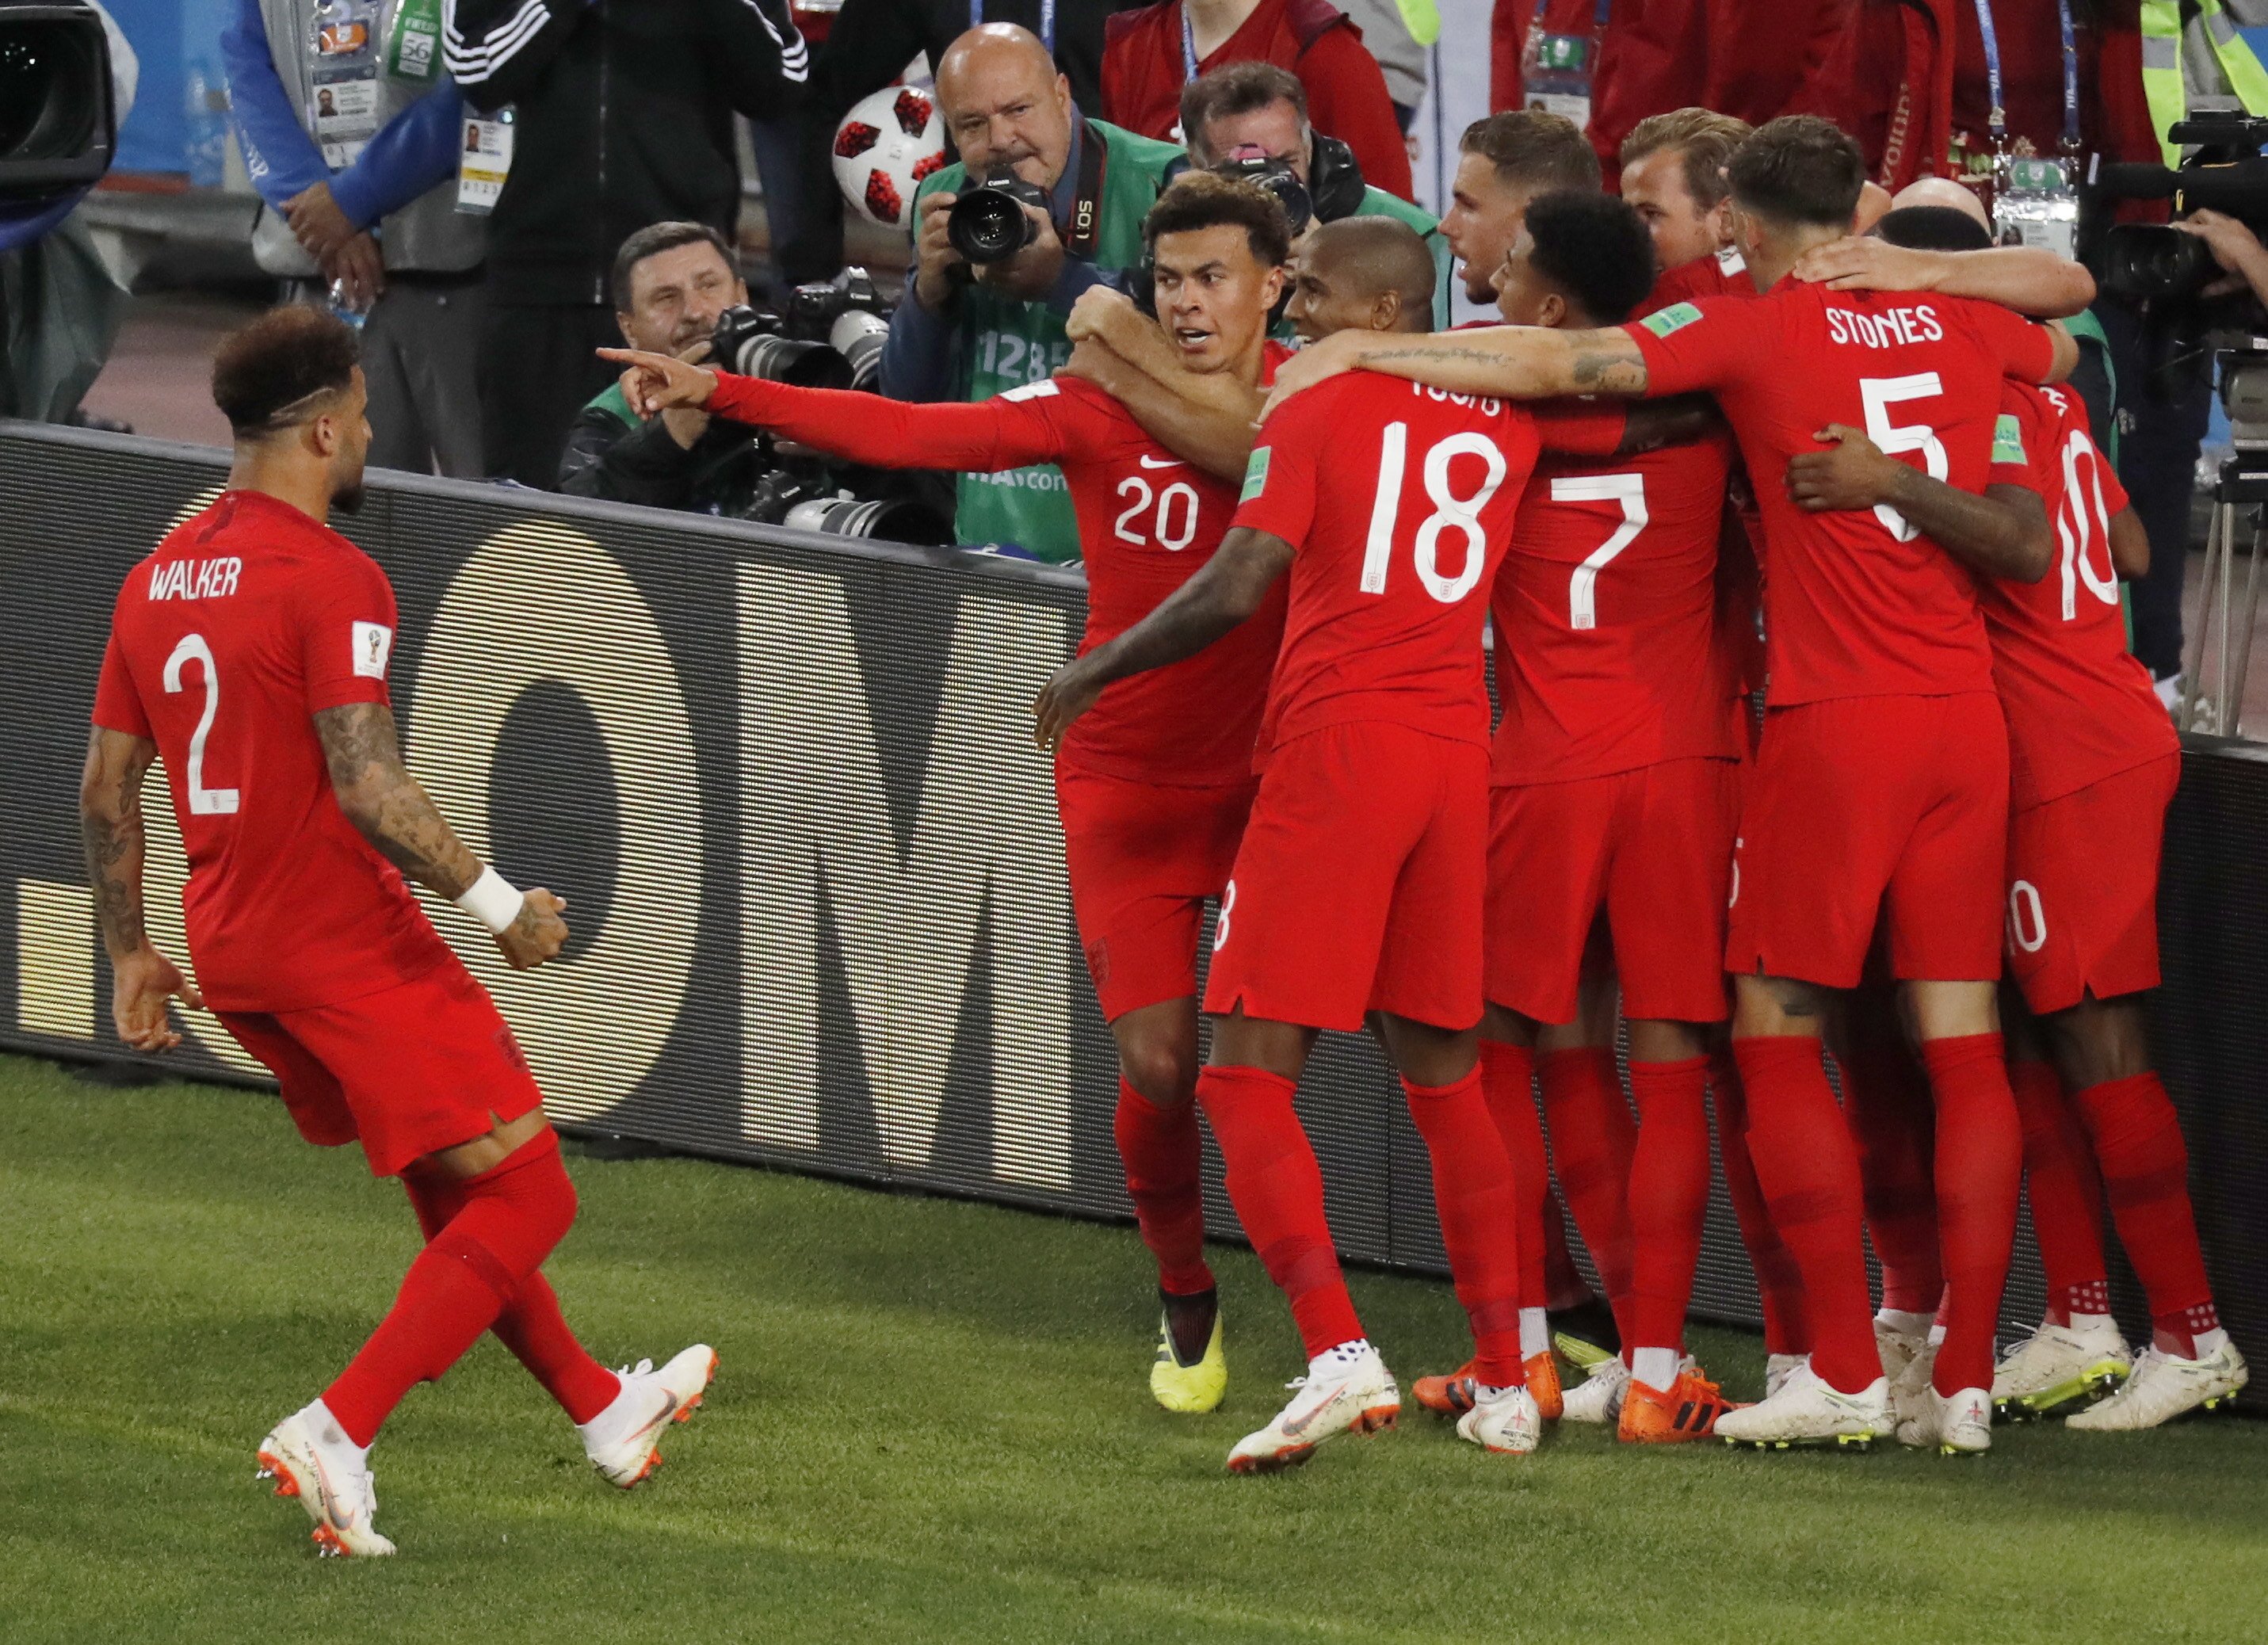 Anglaterra supera Colòmbia als penals i passa als quarts del Mundial (1-1)